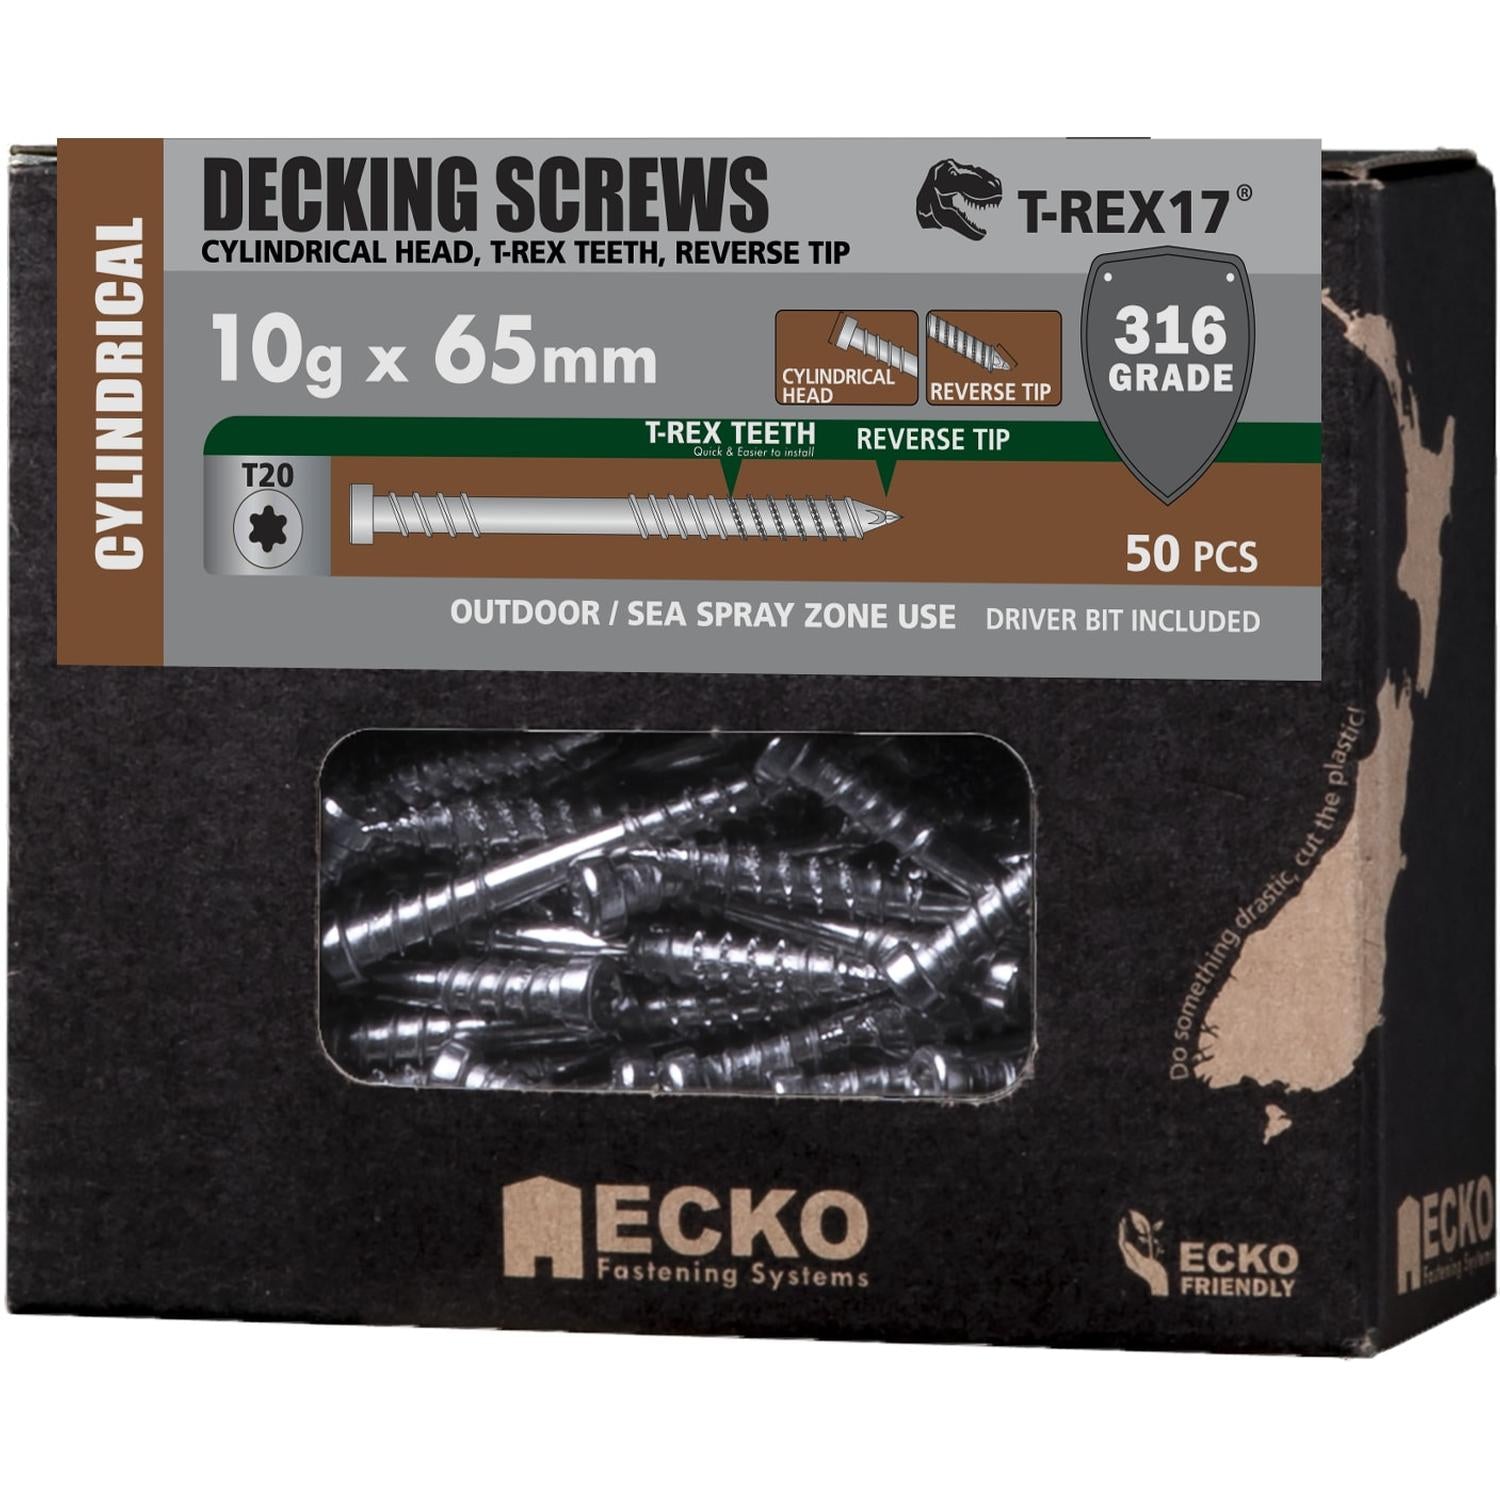 Ecko T-Rex17® Ecko 10G X 65Mm Cylindrical Head Ss316 Decking Screws (50 Box)